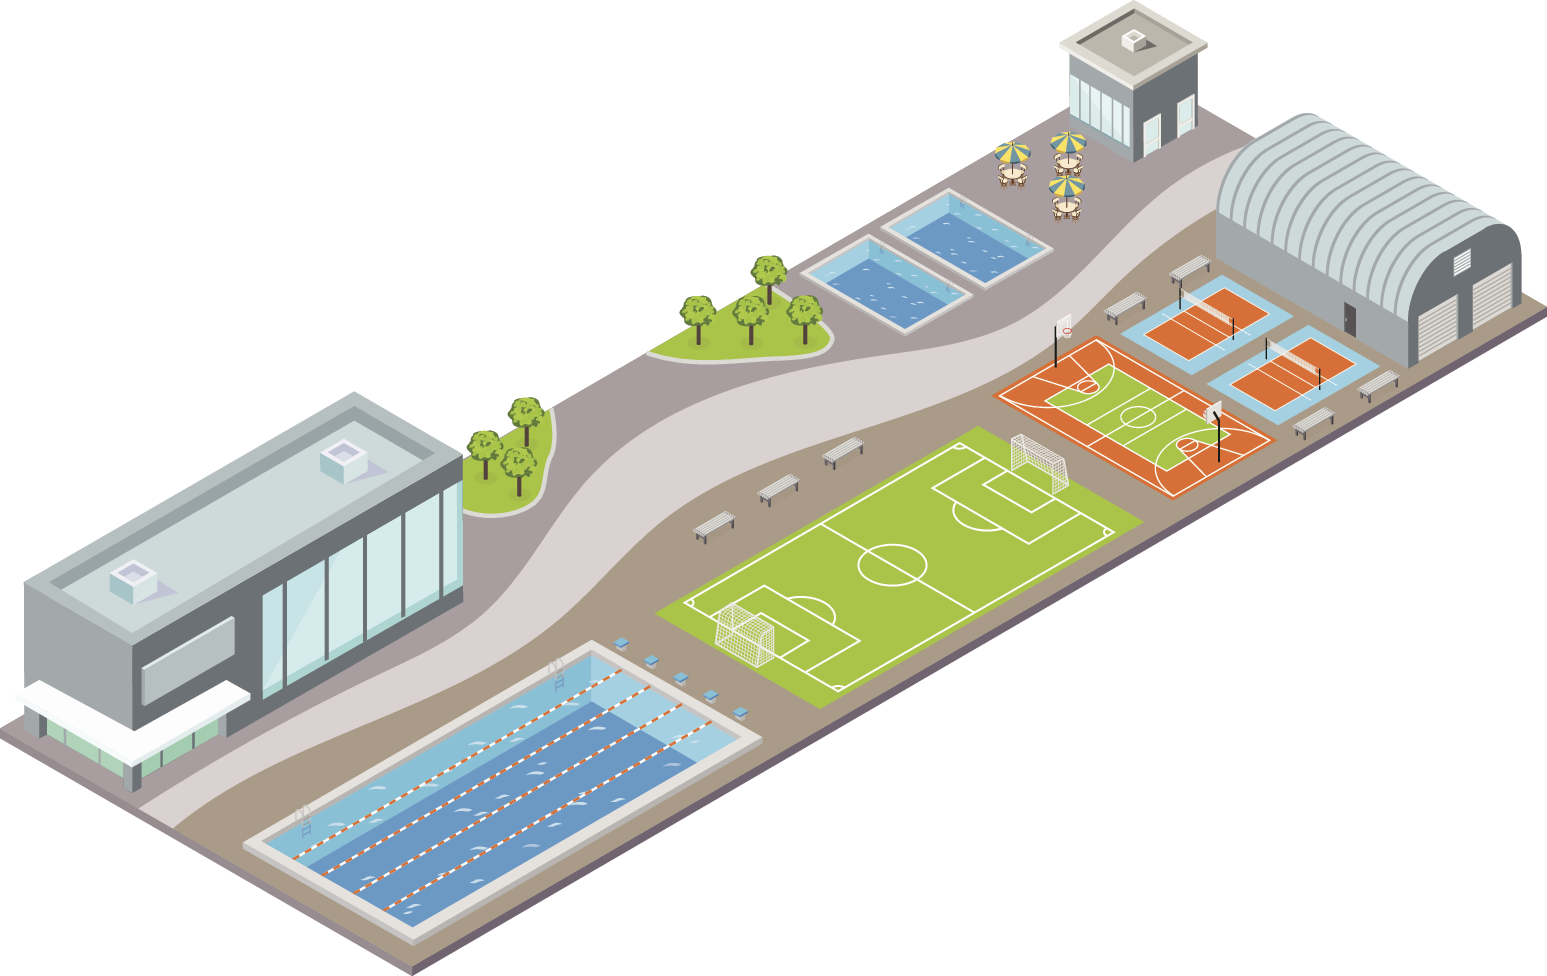 Ilustração.  Vista de cima de maquete. À esquerda, construção e piscina retangular. No centro, quadra de futebol. À direita, quadra de basquete, quadras de vôlei, duas piscinas e construções.